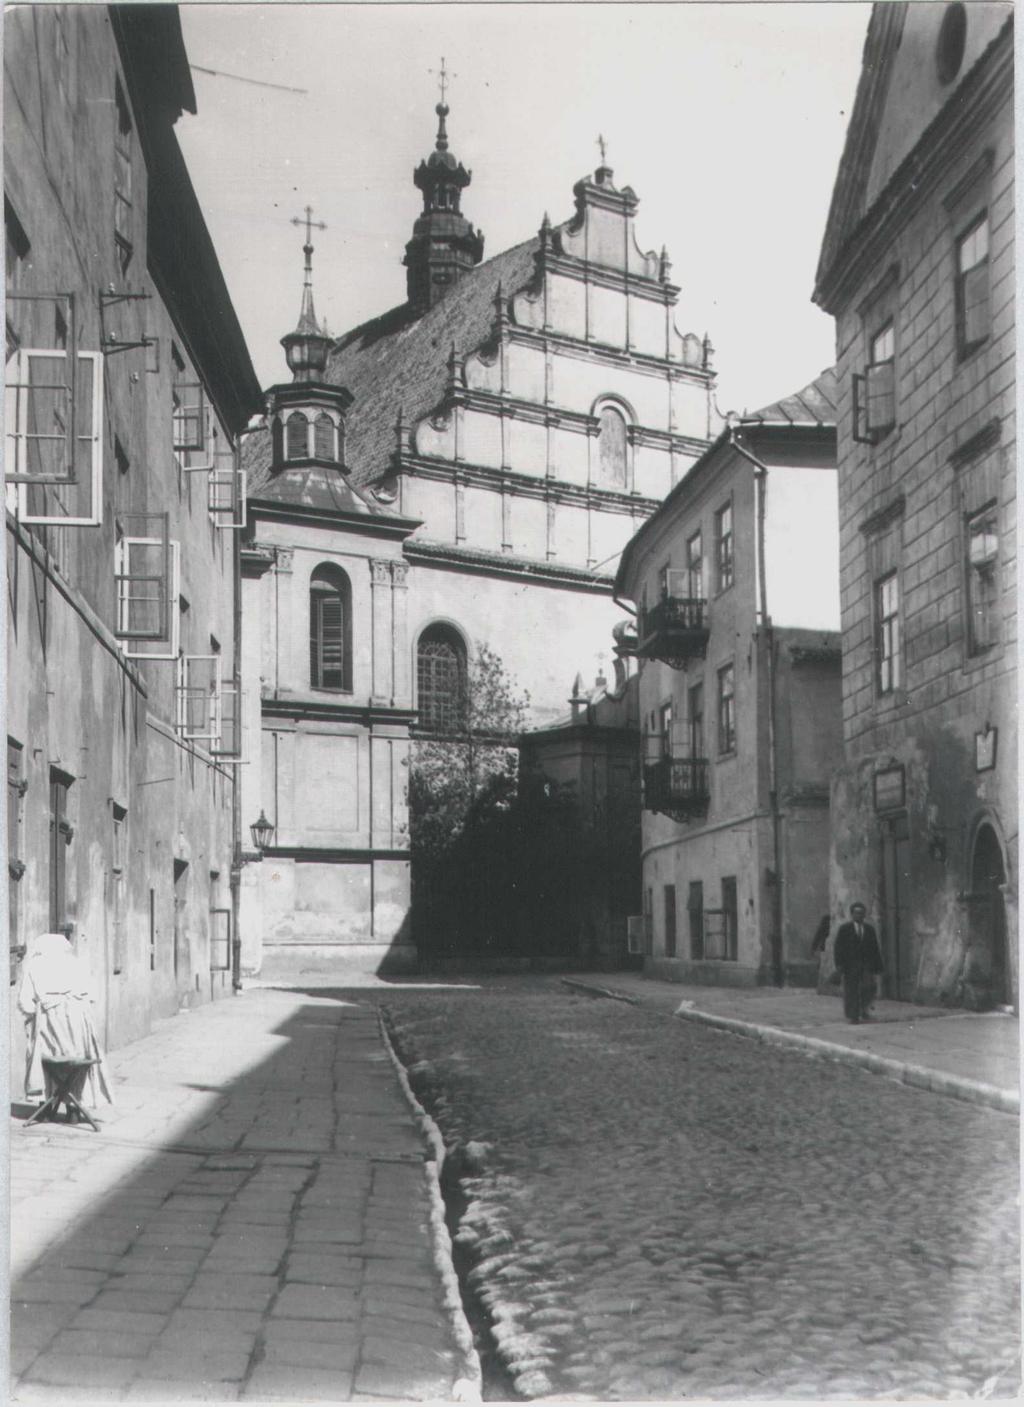 Fotografie przedwojenne/pre-war photographs: Złota 6, kamienica